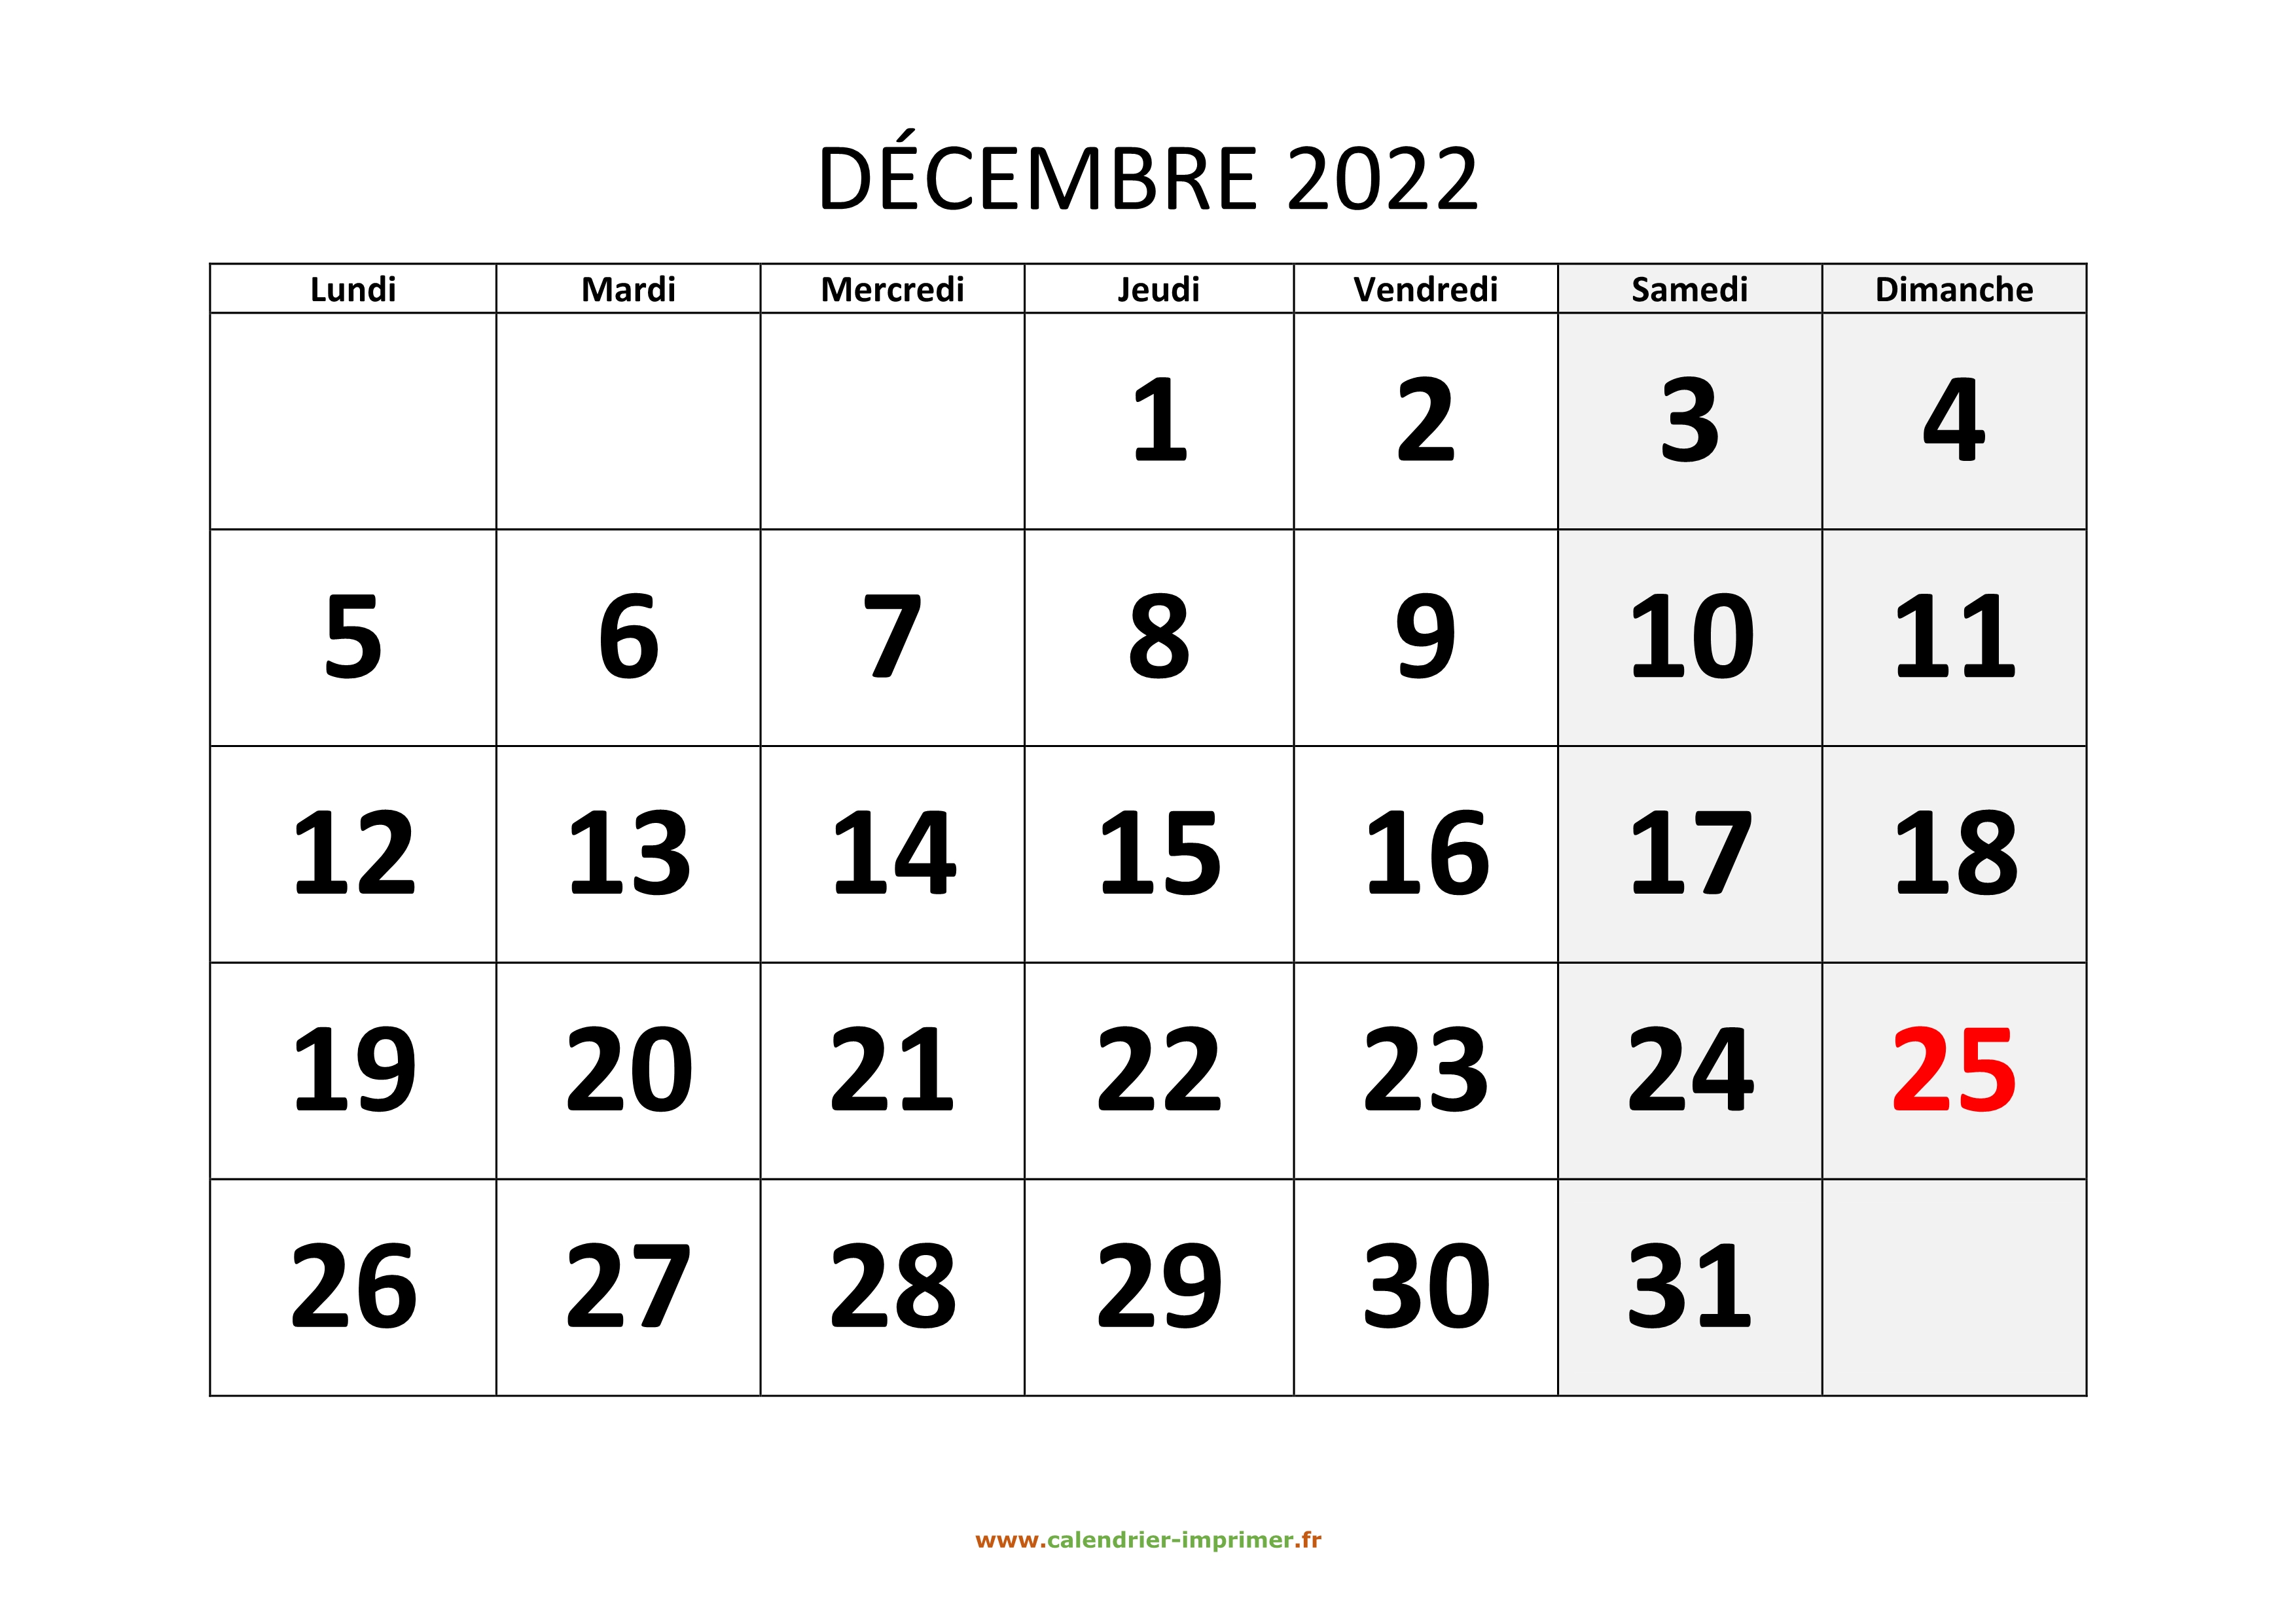 Calendrier Décembre 2022 à Imprimer Calendrier Décembre 2022 à imprimer